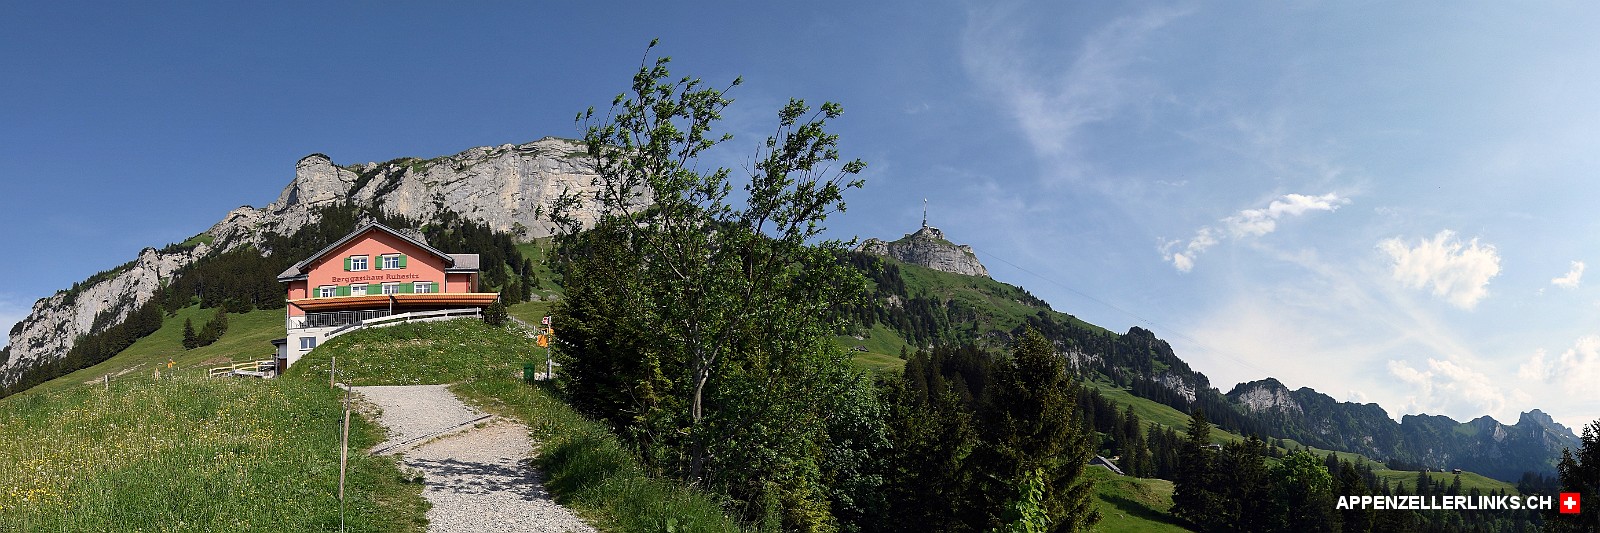 Panorama Ruhesitz